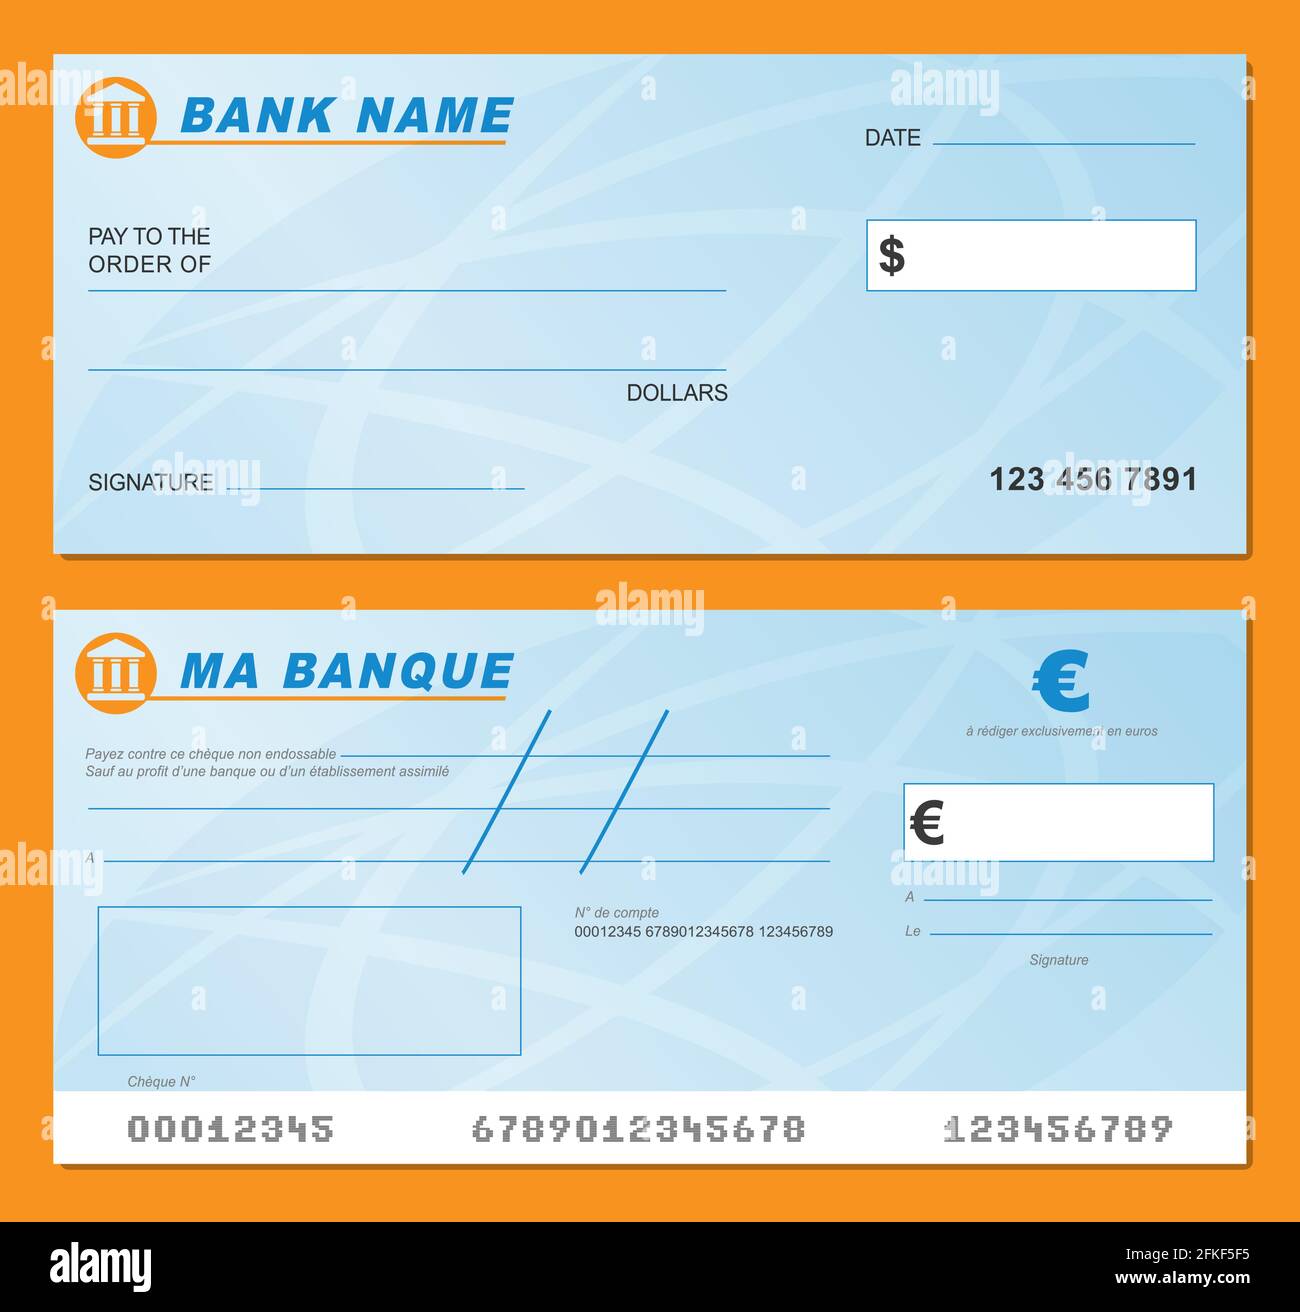 Icône 3d D'un Chèque Bancaire Noir Et D'un Stylo Or Et Noir